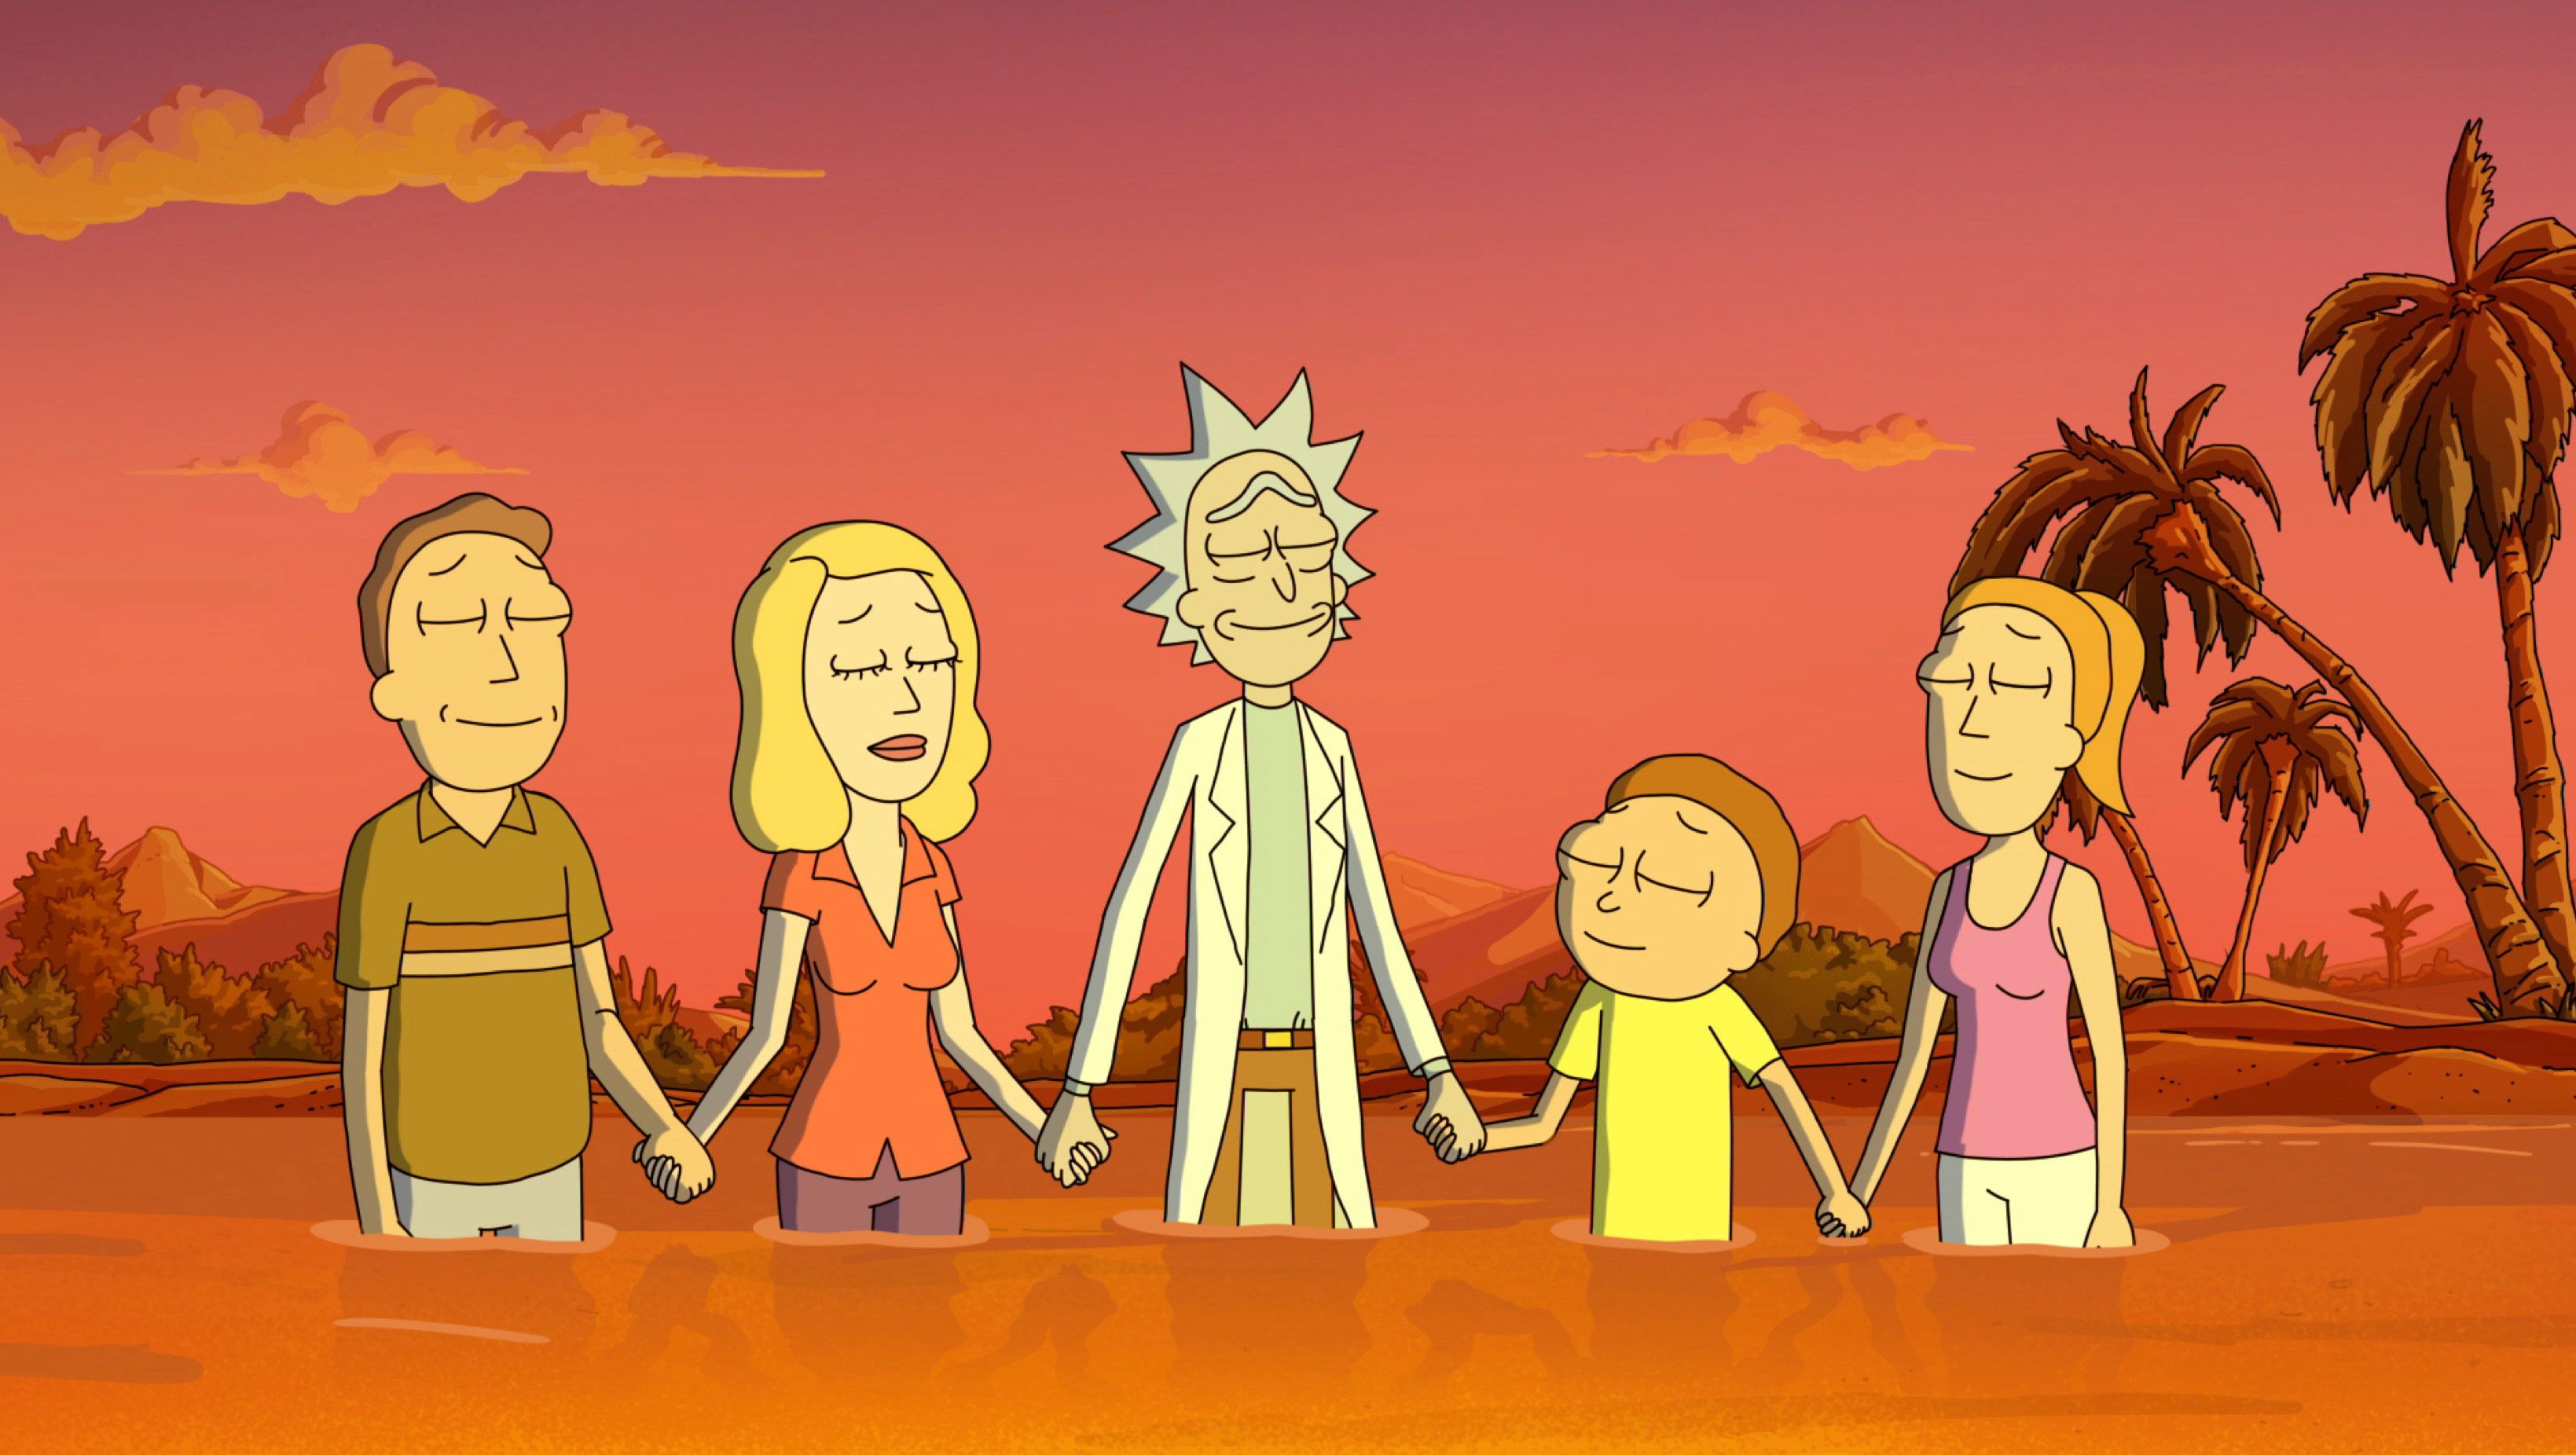 Rick & Morty - 7ª Temporada, Tráiler oficial